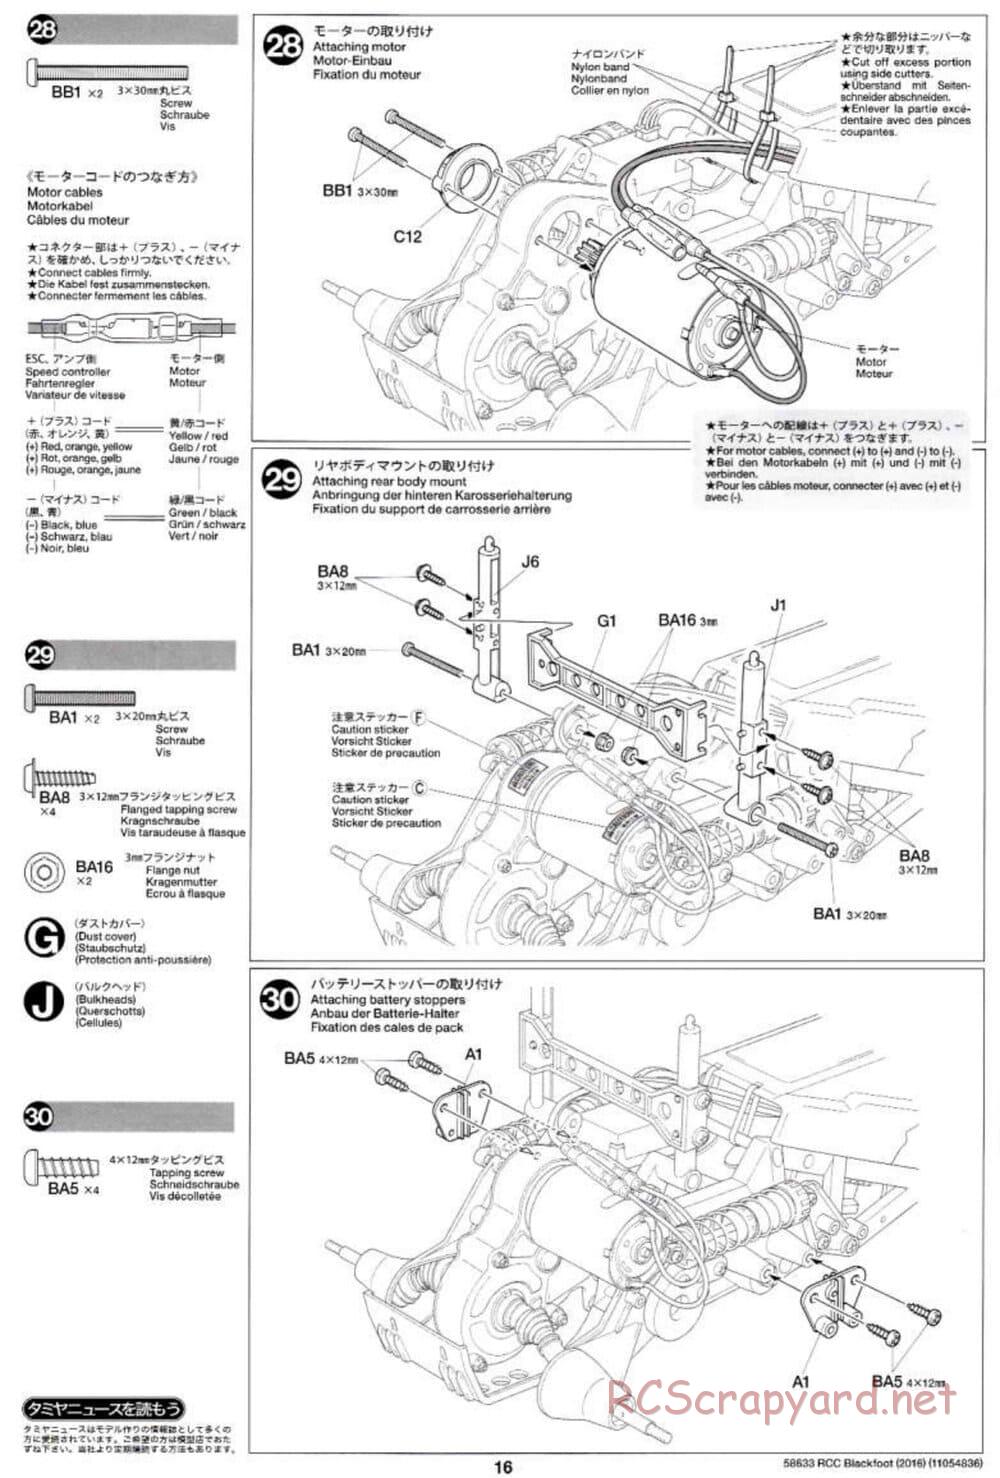 Tamiya - Blackfoot 2016 - ORV Chassis - Manual - Page 16